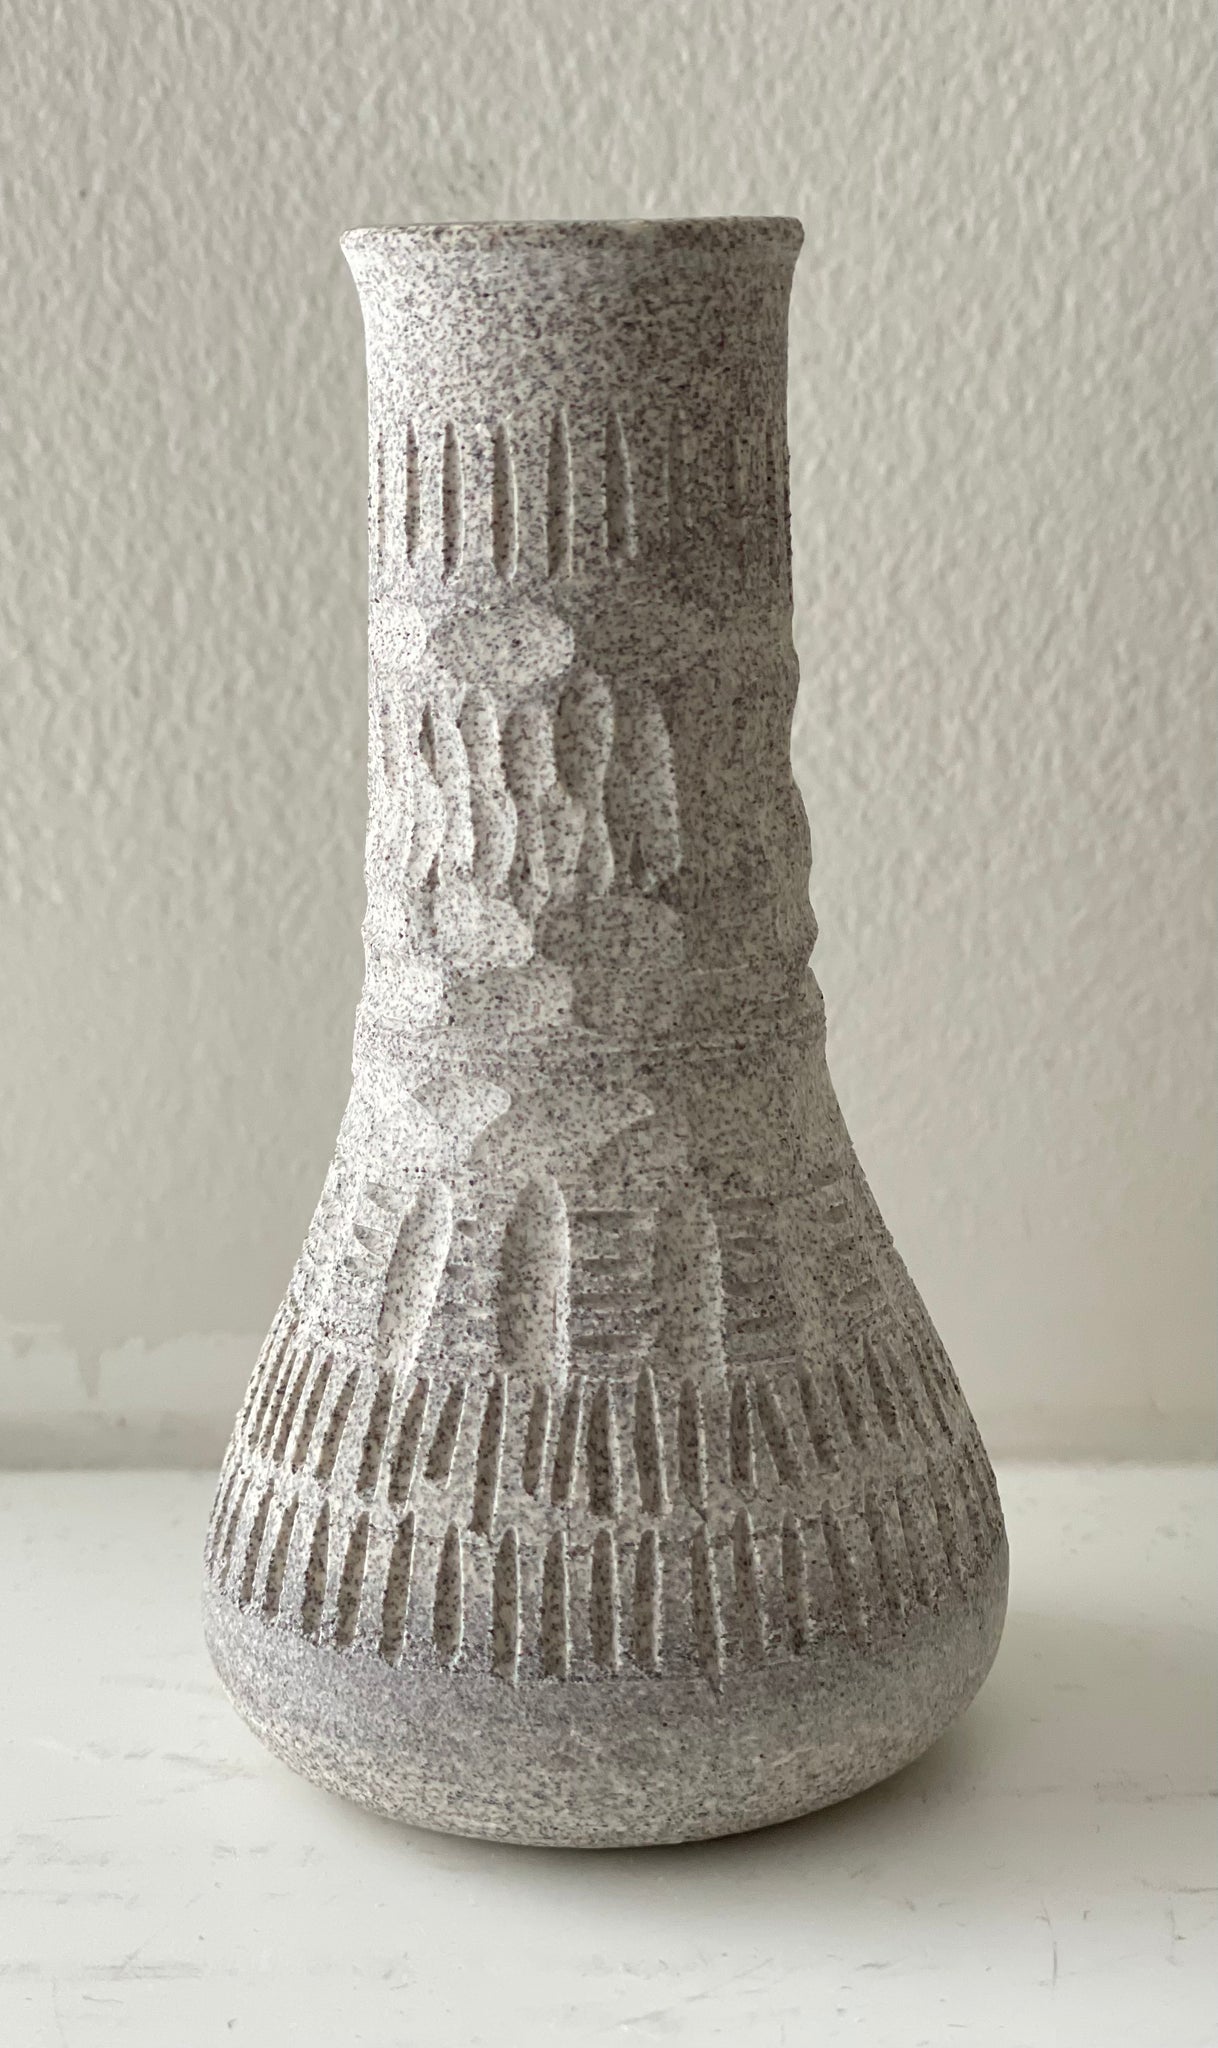 Genie in a Bottle - Granite Bud Vase